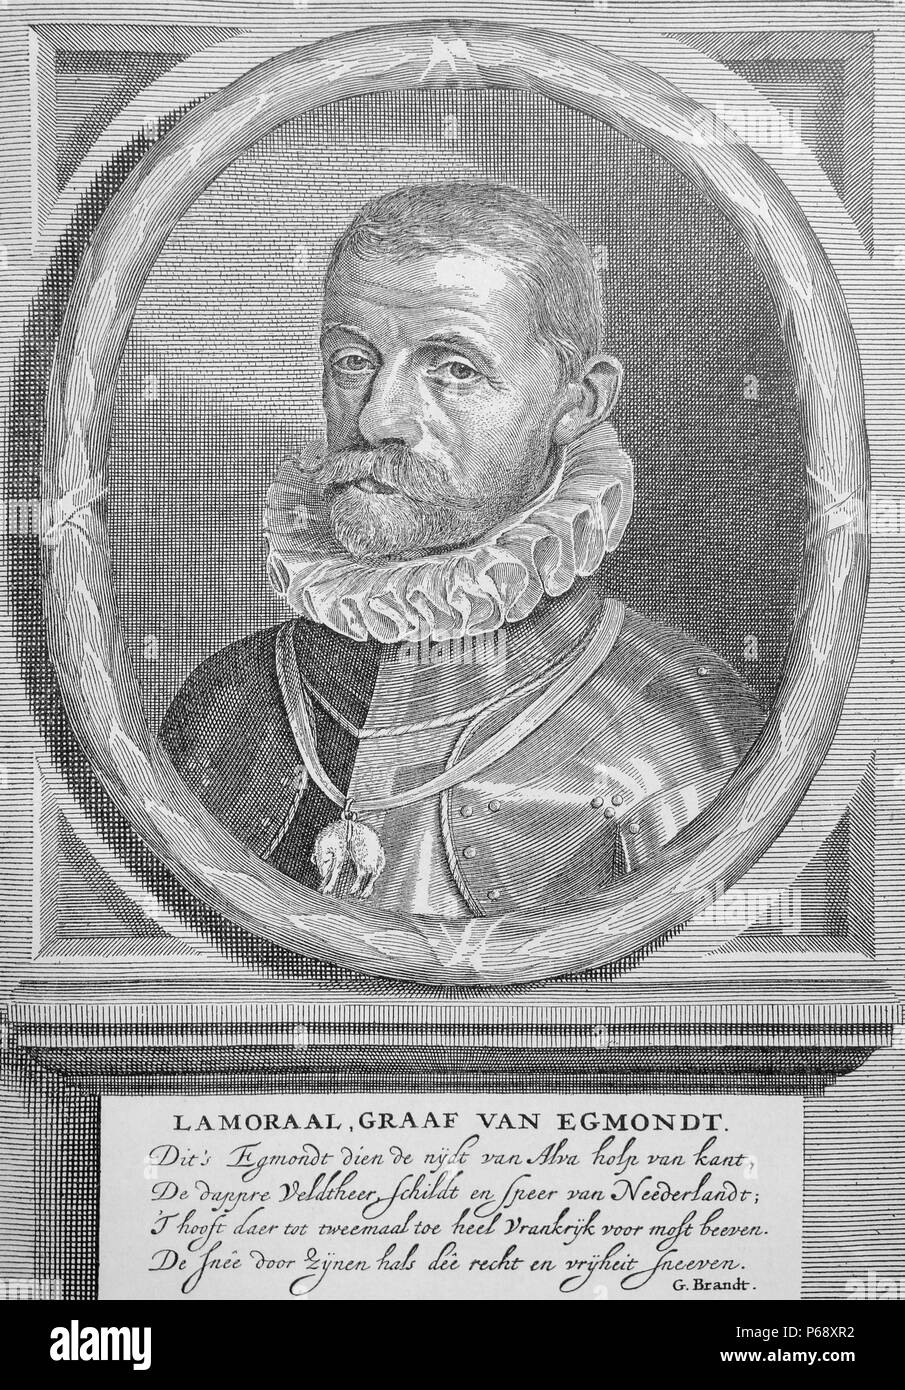 Lamoral ; nombre d'Egmont, Prince de Gavere (Novembre 18, 1522 - juin 5, 1568). Général et homme d'État dans les Habsbourg aux Pays-Bas. Son exécution a contribué à déclencher le soulèvement national qui a mené à l'indépendance des Pays-Bas. Banque D'Images